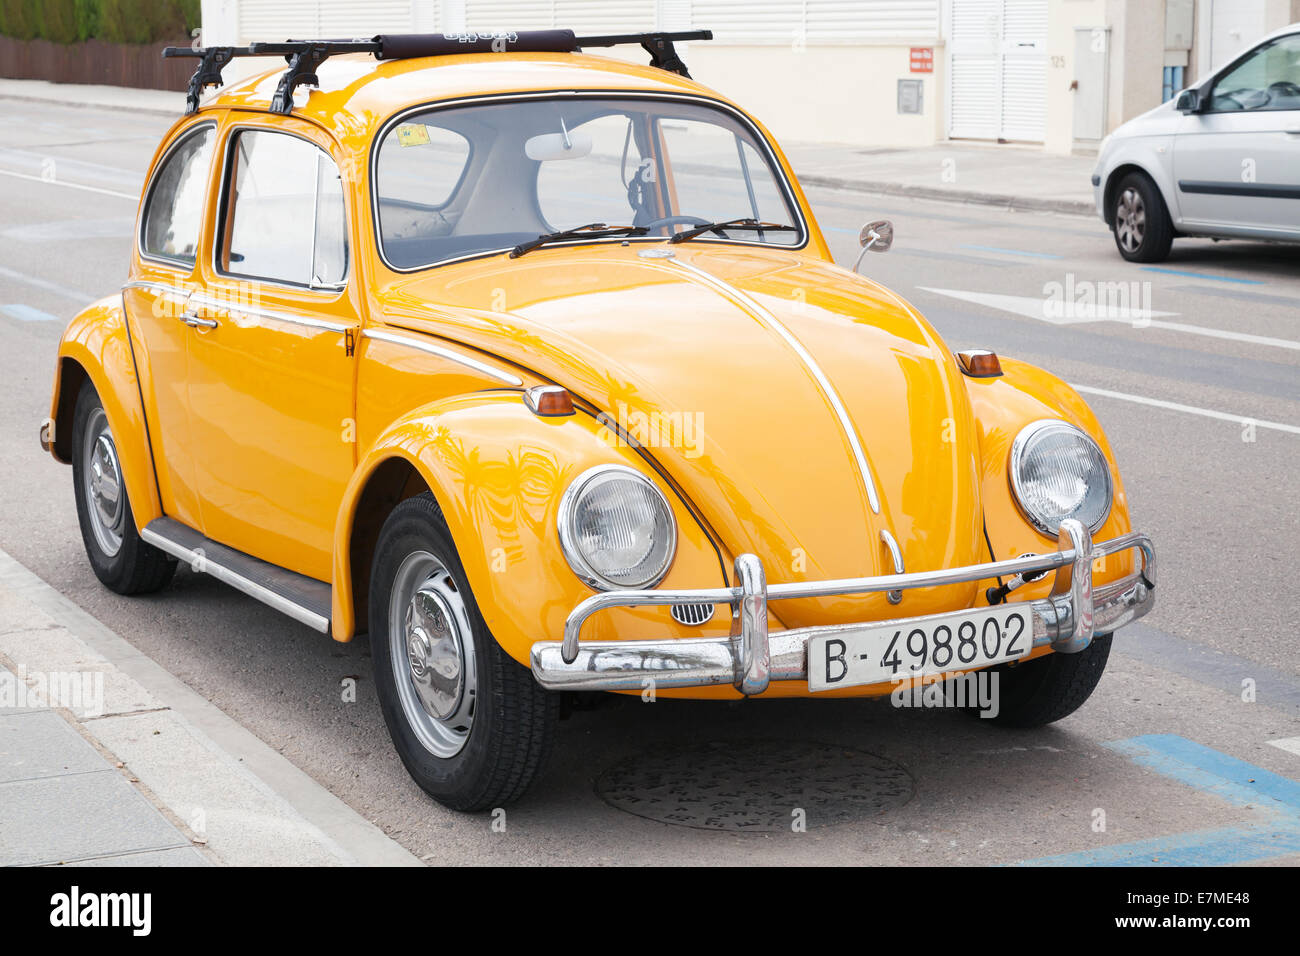 Volkswagen jaune Kafer est garée sur le bord de la route Banque D'Images